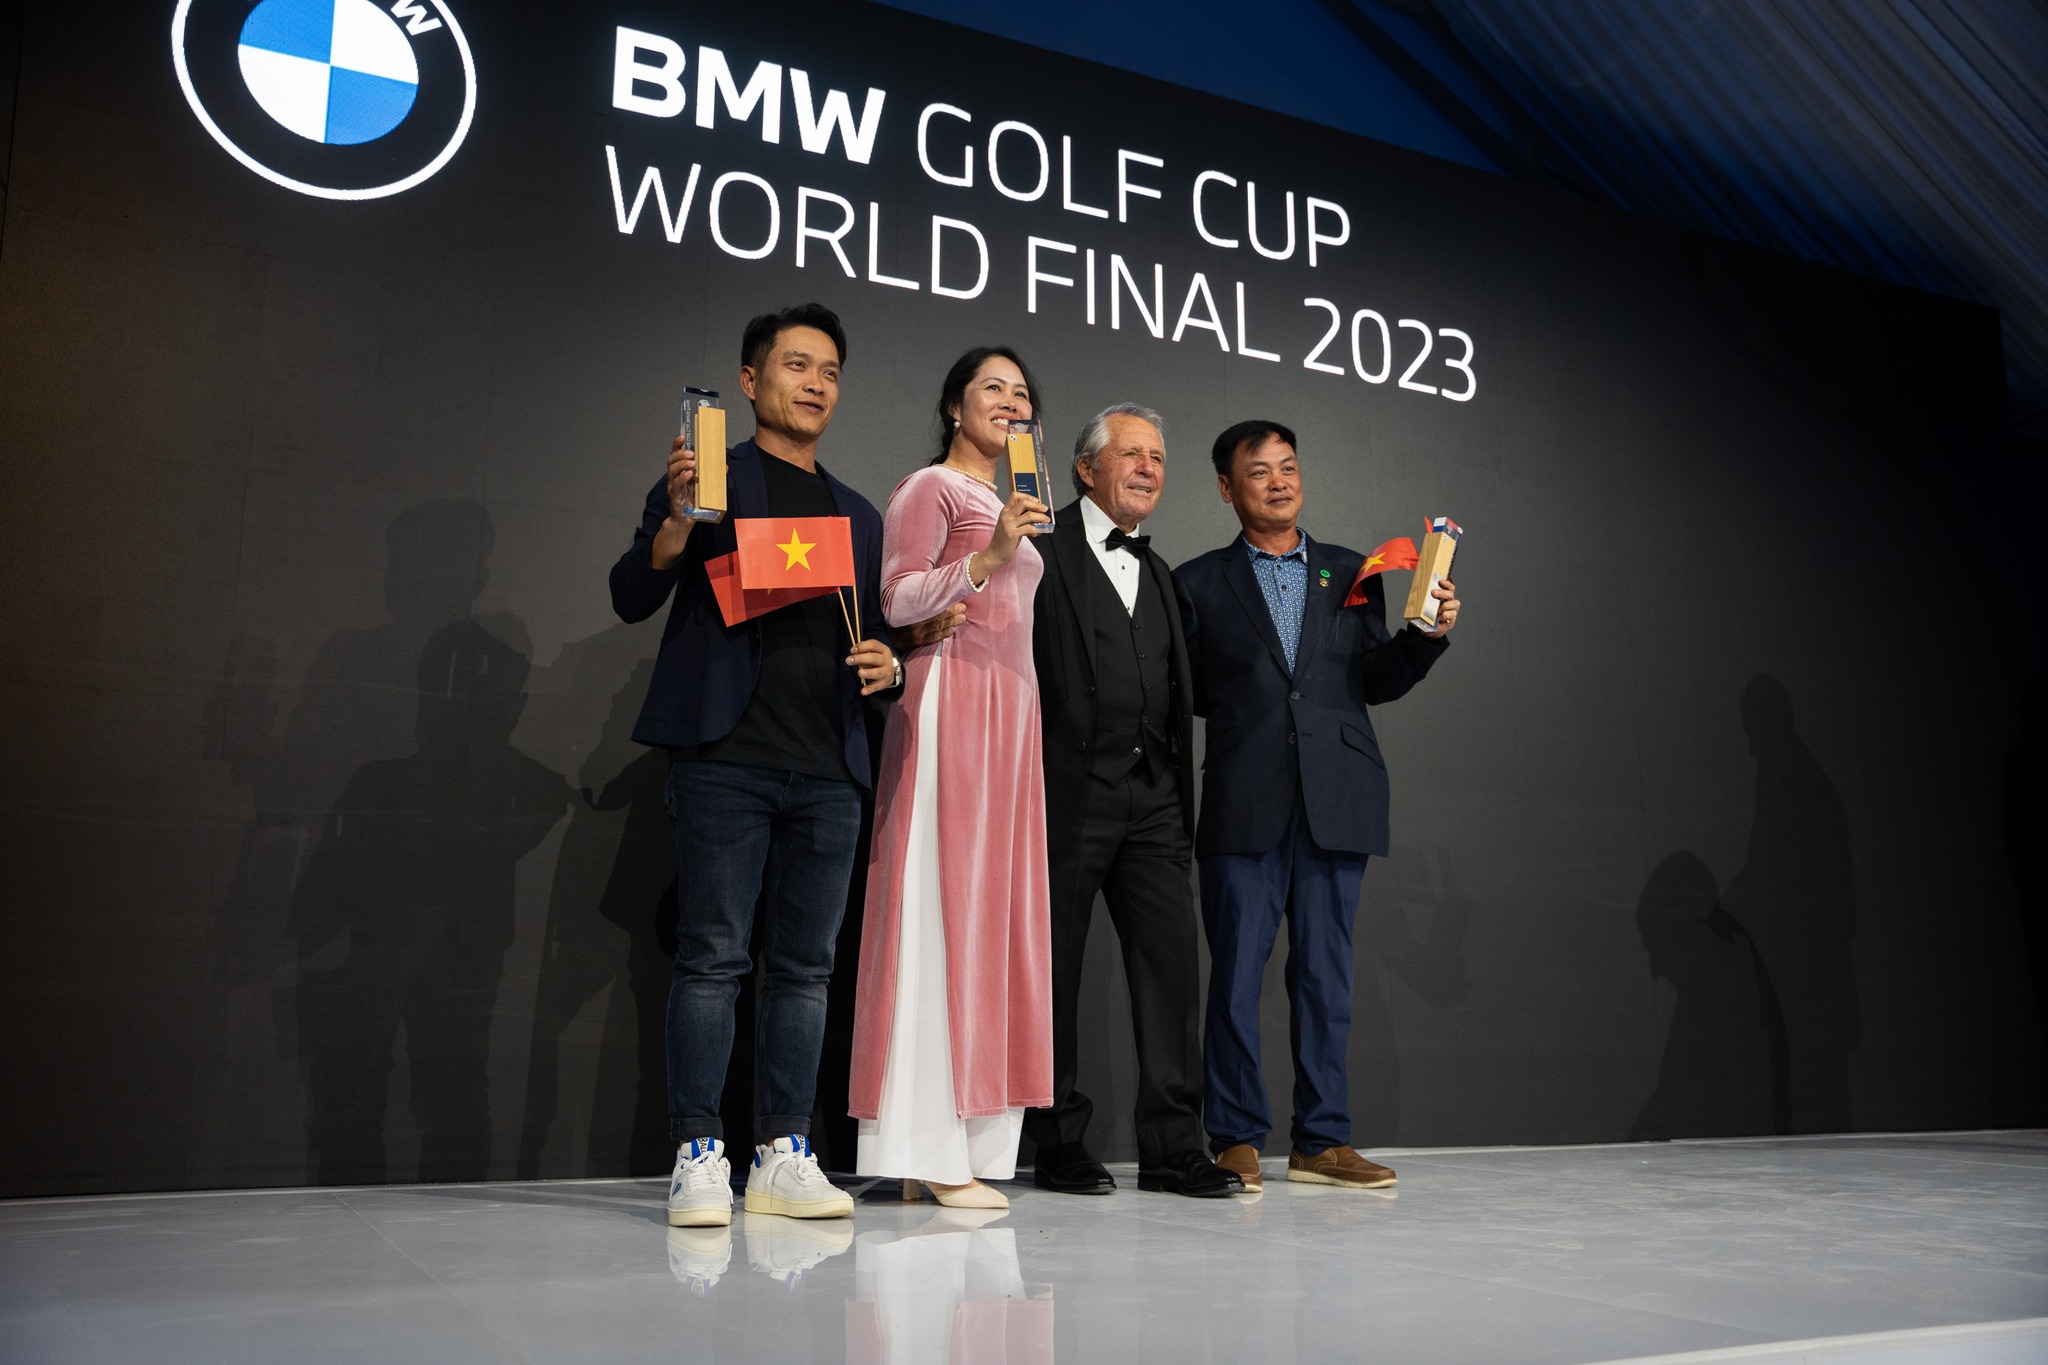 Đại diện Việt Nam giành Á quân toàn đoàn tại giải BMW Golf Cup - Vòng chung kết Thế giới 2023 tại Nam Phi